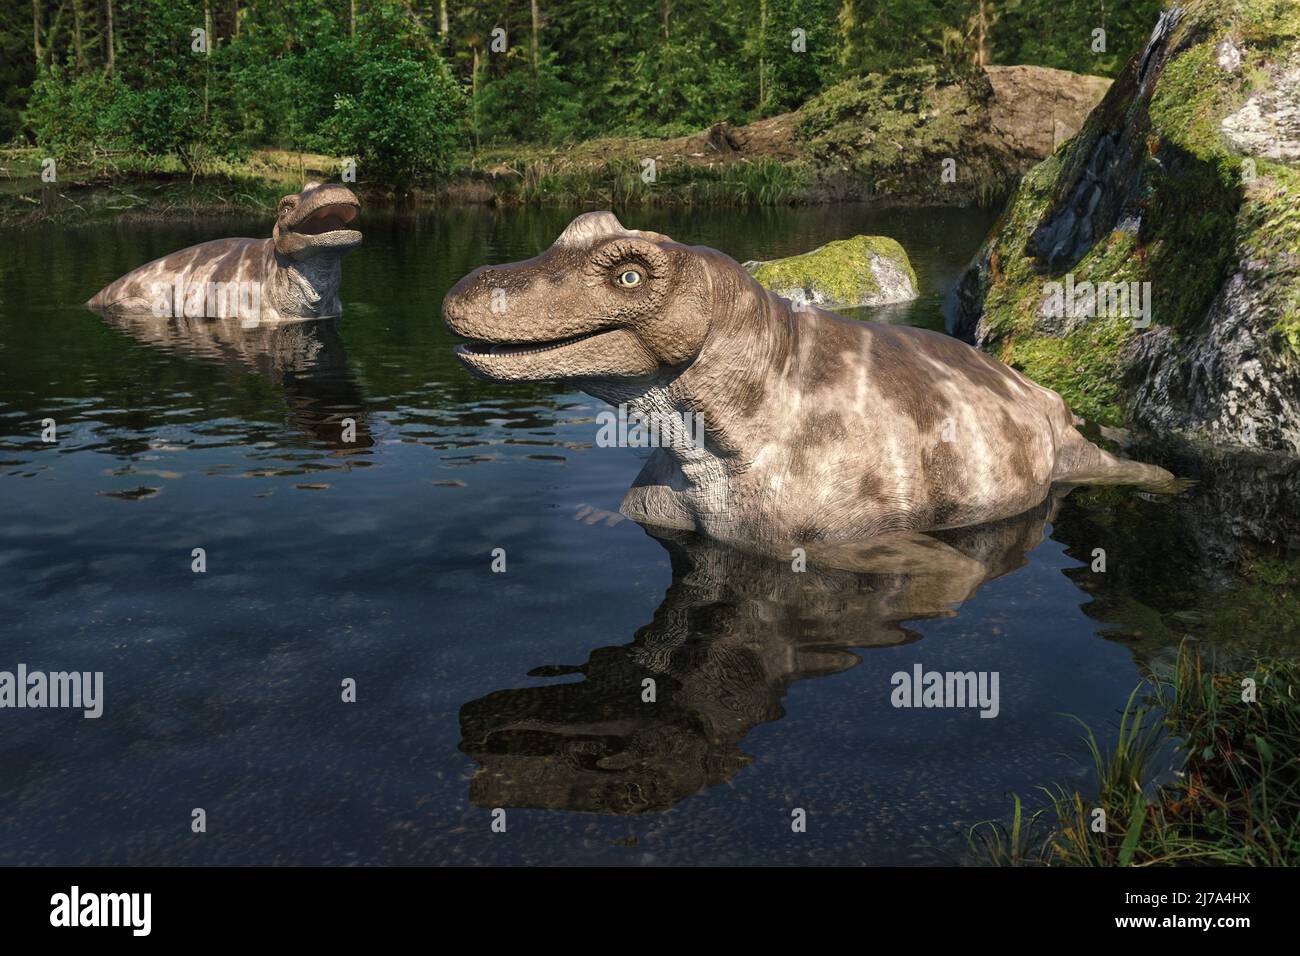 Keratocephalus dinosaur, illustration Stock Photo